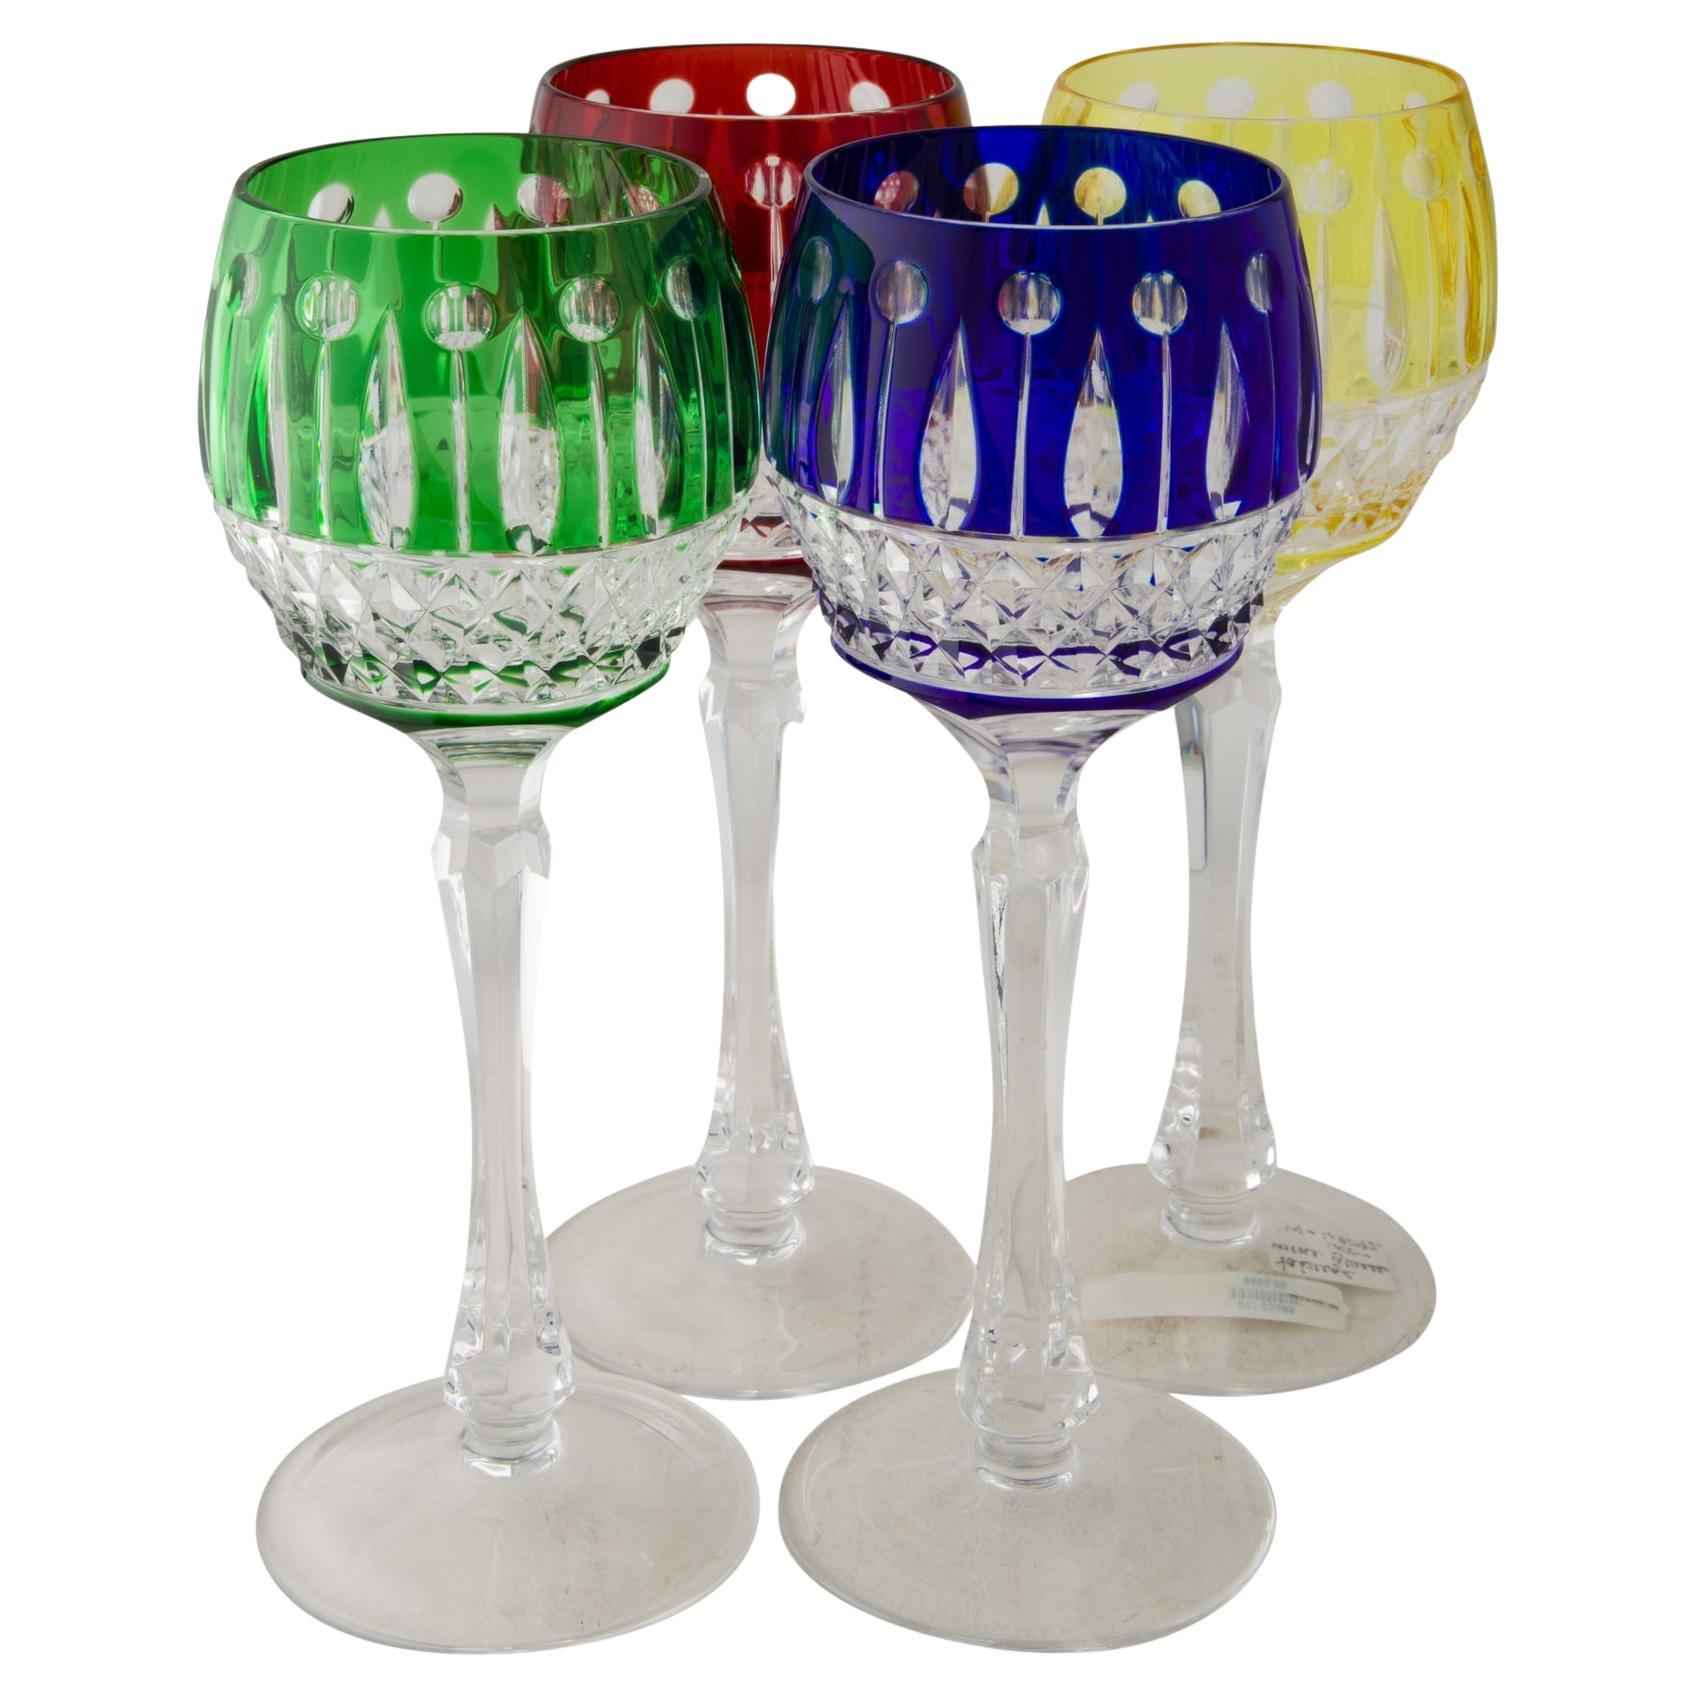 https://a.1stdibscdn.com/faberge-crystal-wine-glasses-set-of-4-for-sale/v_18152/v_164804121658439747946/v_16480412_1658439748445_bg_processed.jpg